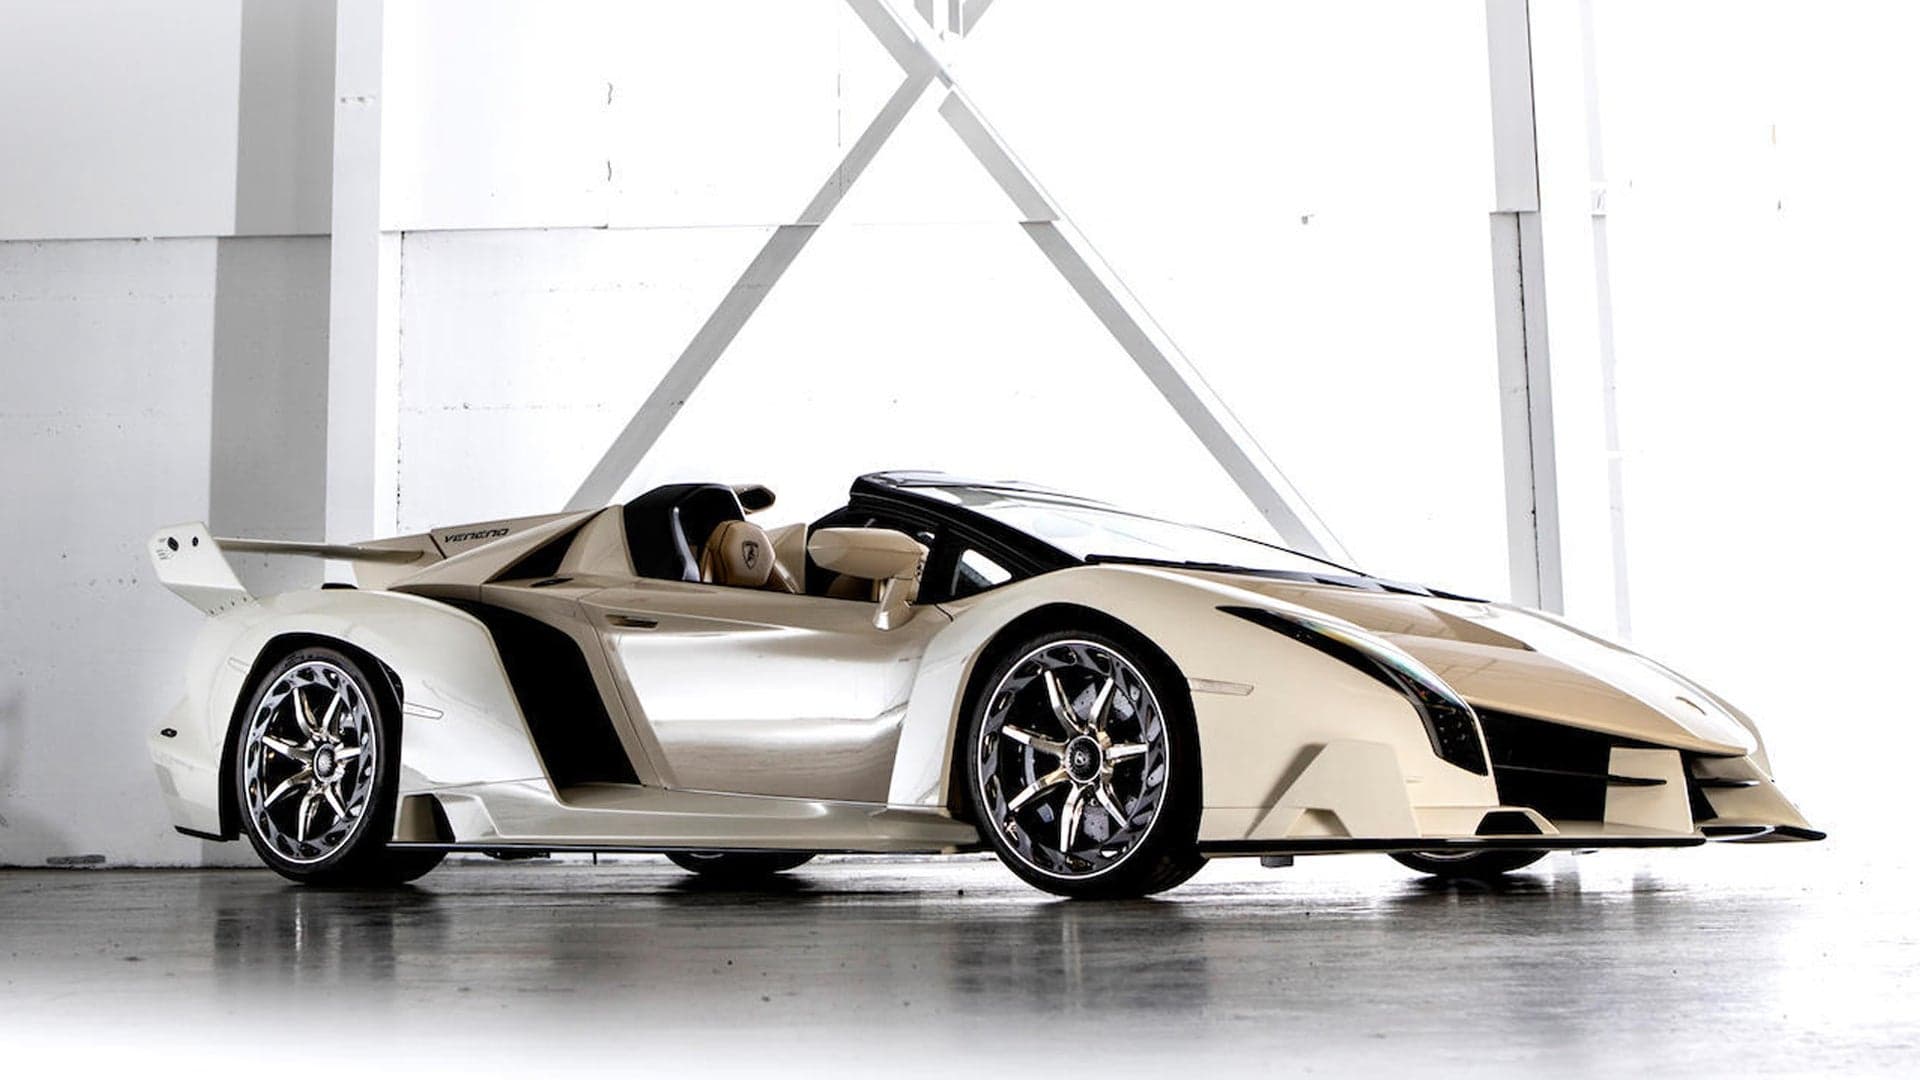 2014 Lamborghini Veneno Seized From Corrupt Official Sells for $8.3 Million